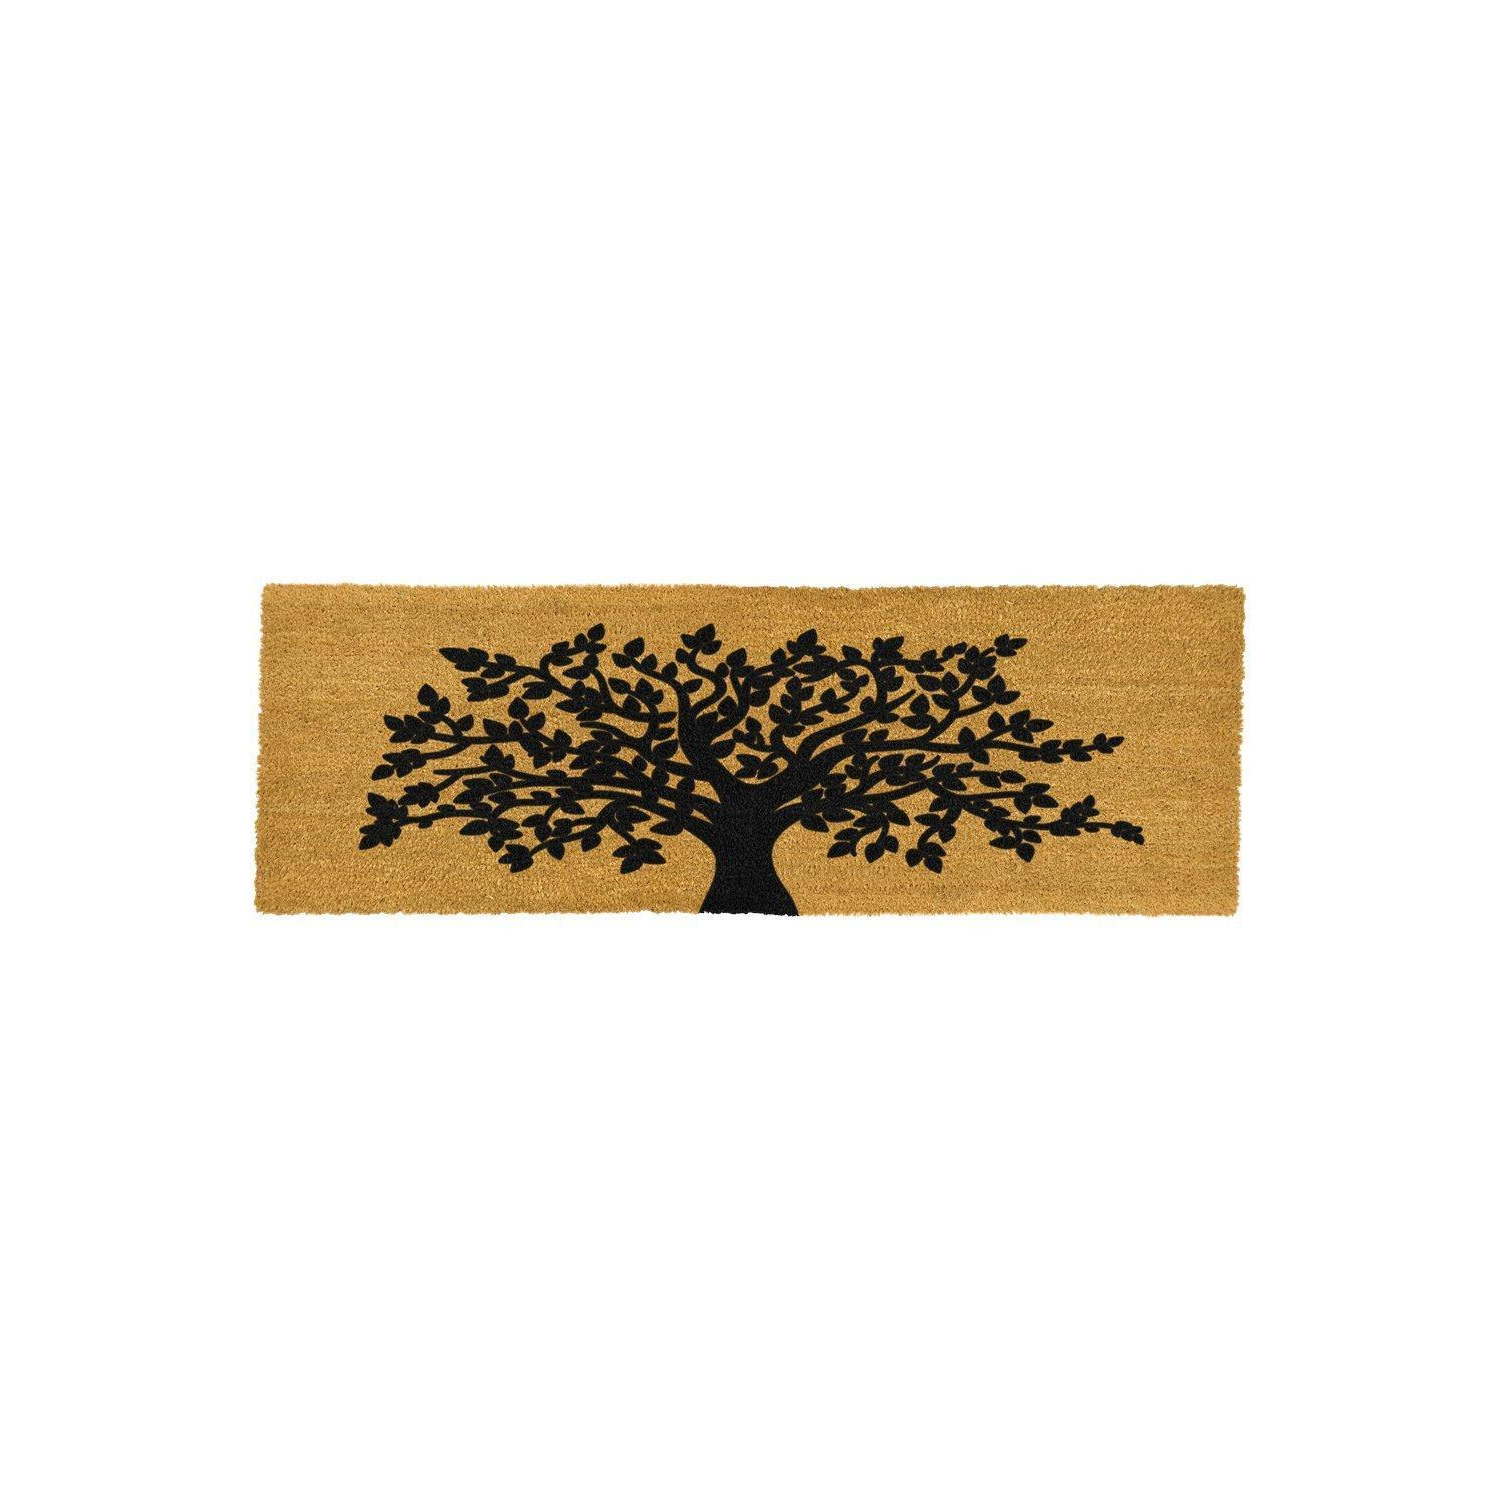 Tree of Life Harmony Double Door / Patio Doormat - image 1